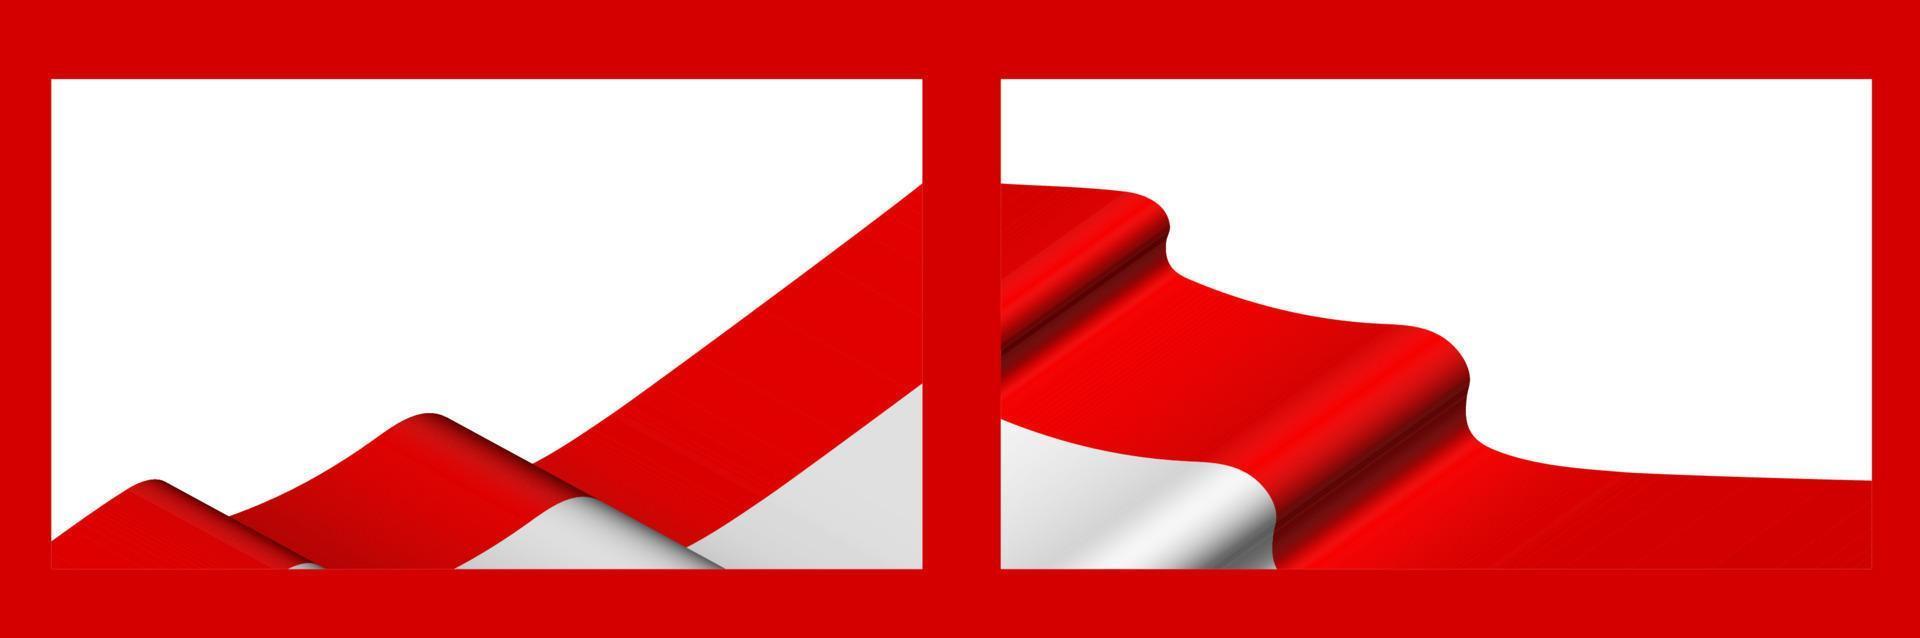 plano de fundo, modelo para design festivo. bandeira indonésia balançando ao vento. vetor realista em fundo branco